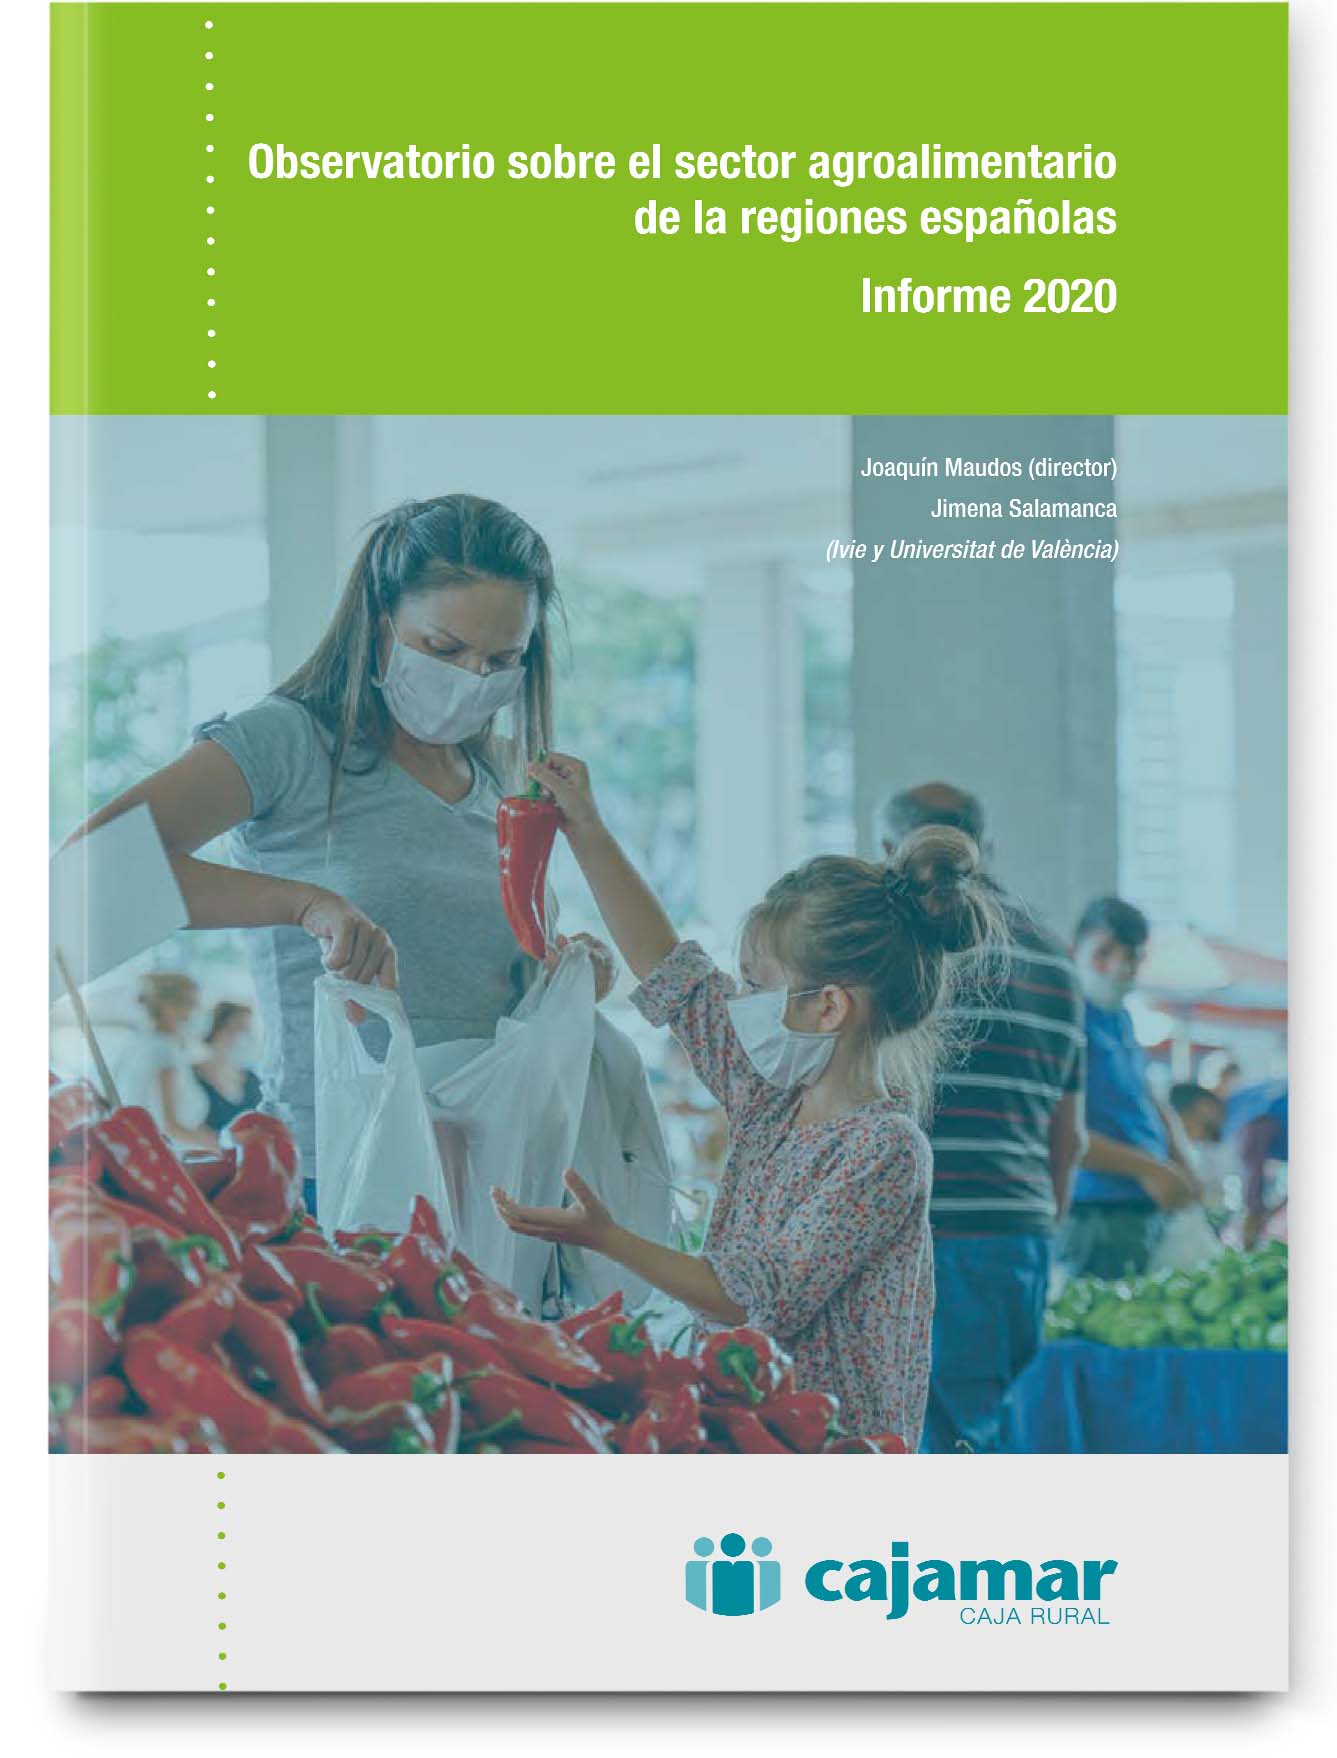 Cajamar y el Ivie presentan el Observatorio sobre el sector agroalimentario de las regiones españolas 2020